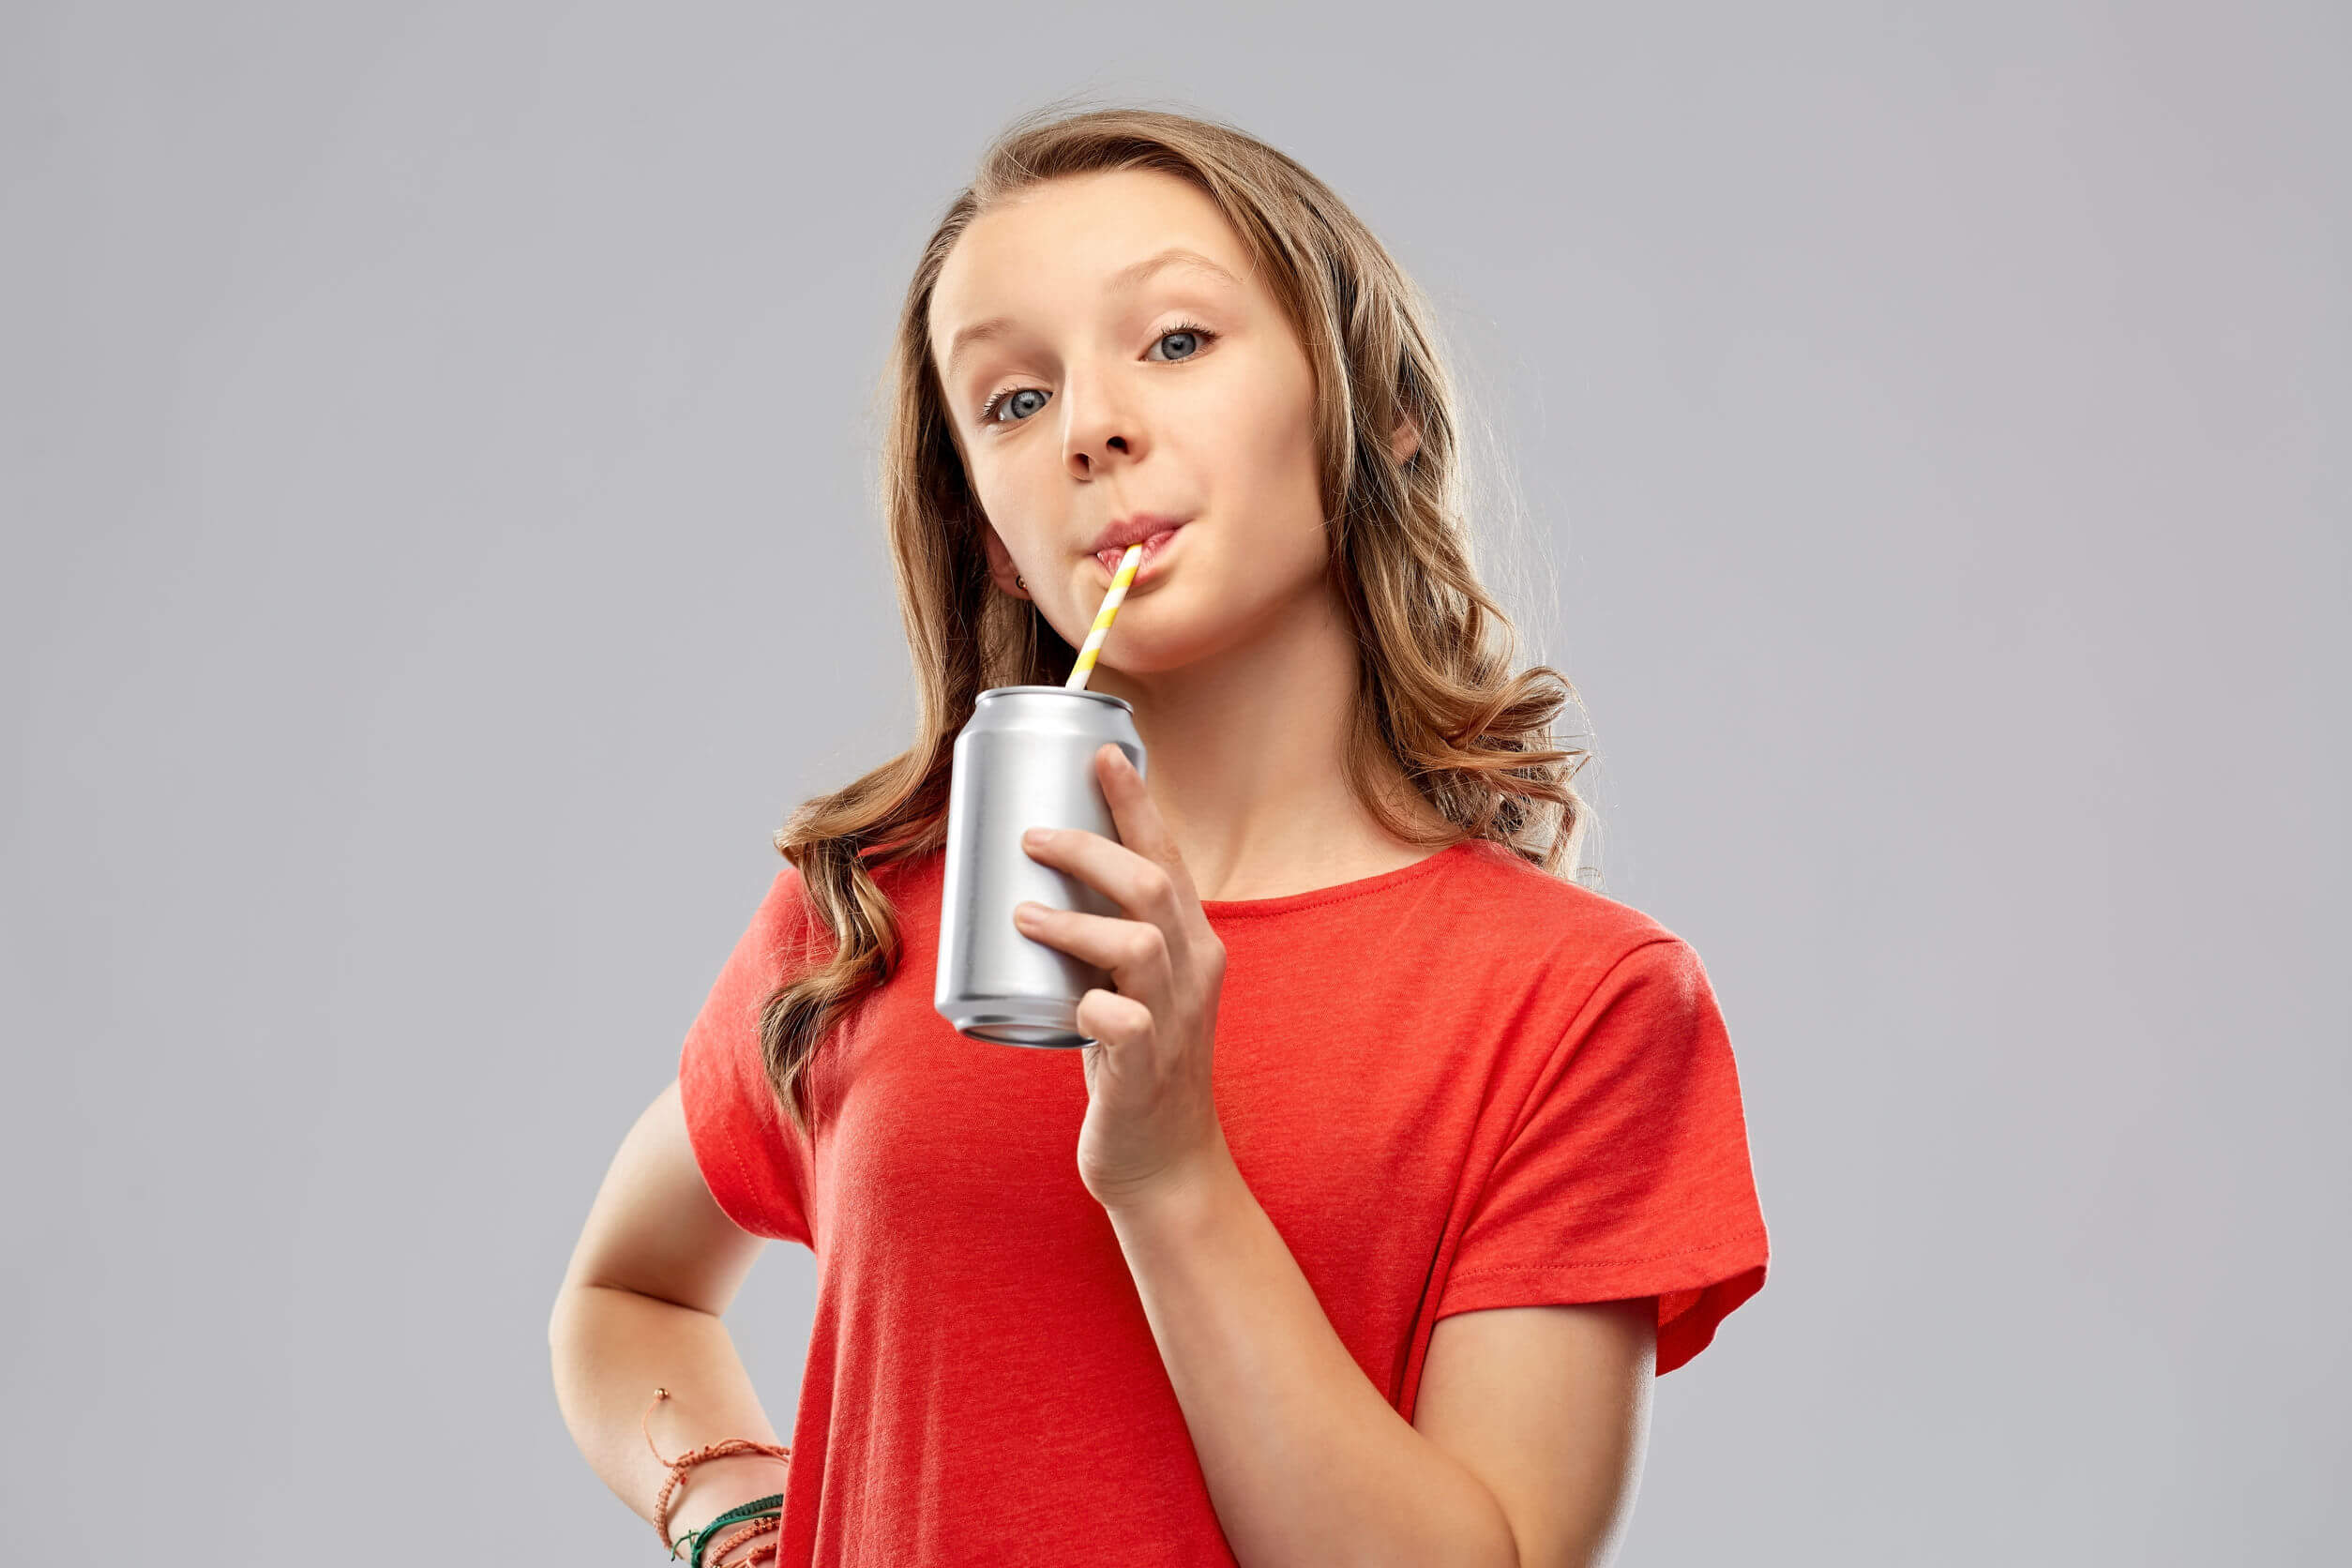 Une adolescente qui boit un soda.